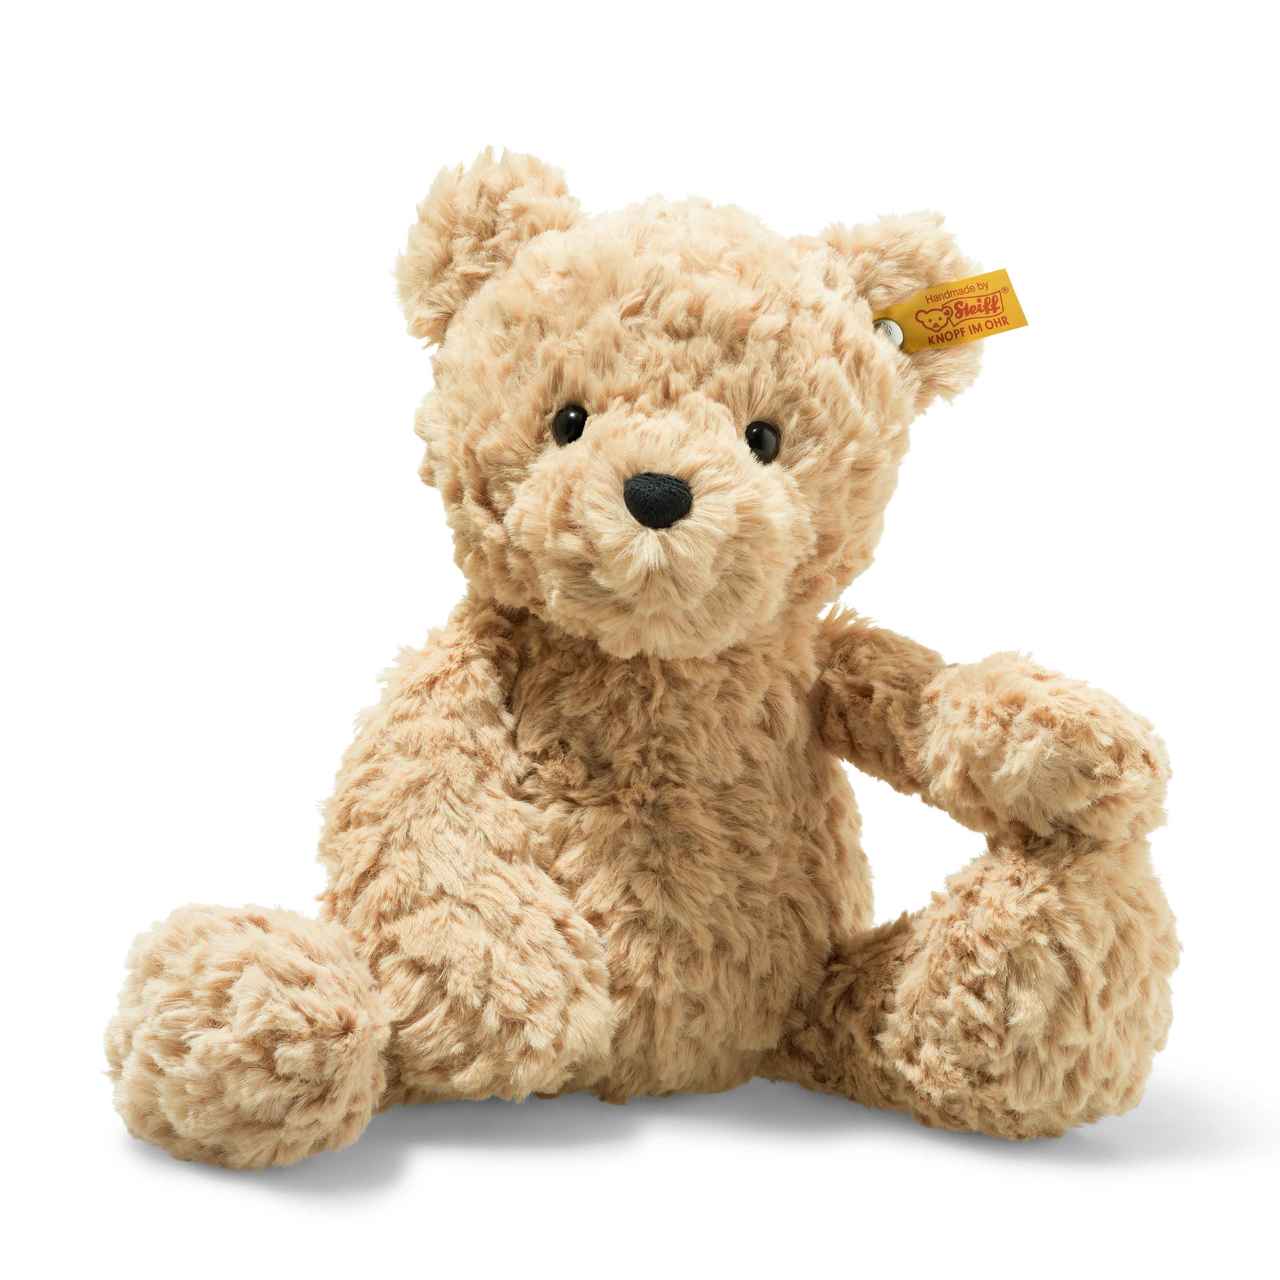 Jimmy Teddy Bear Plush Toy, 12 Inches - Steiff